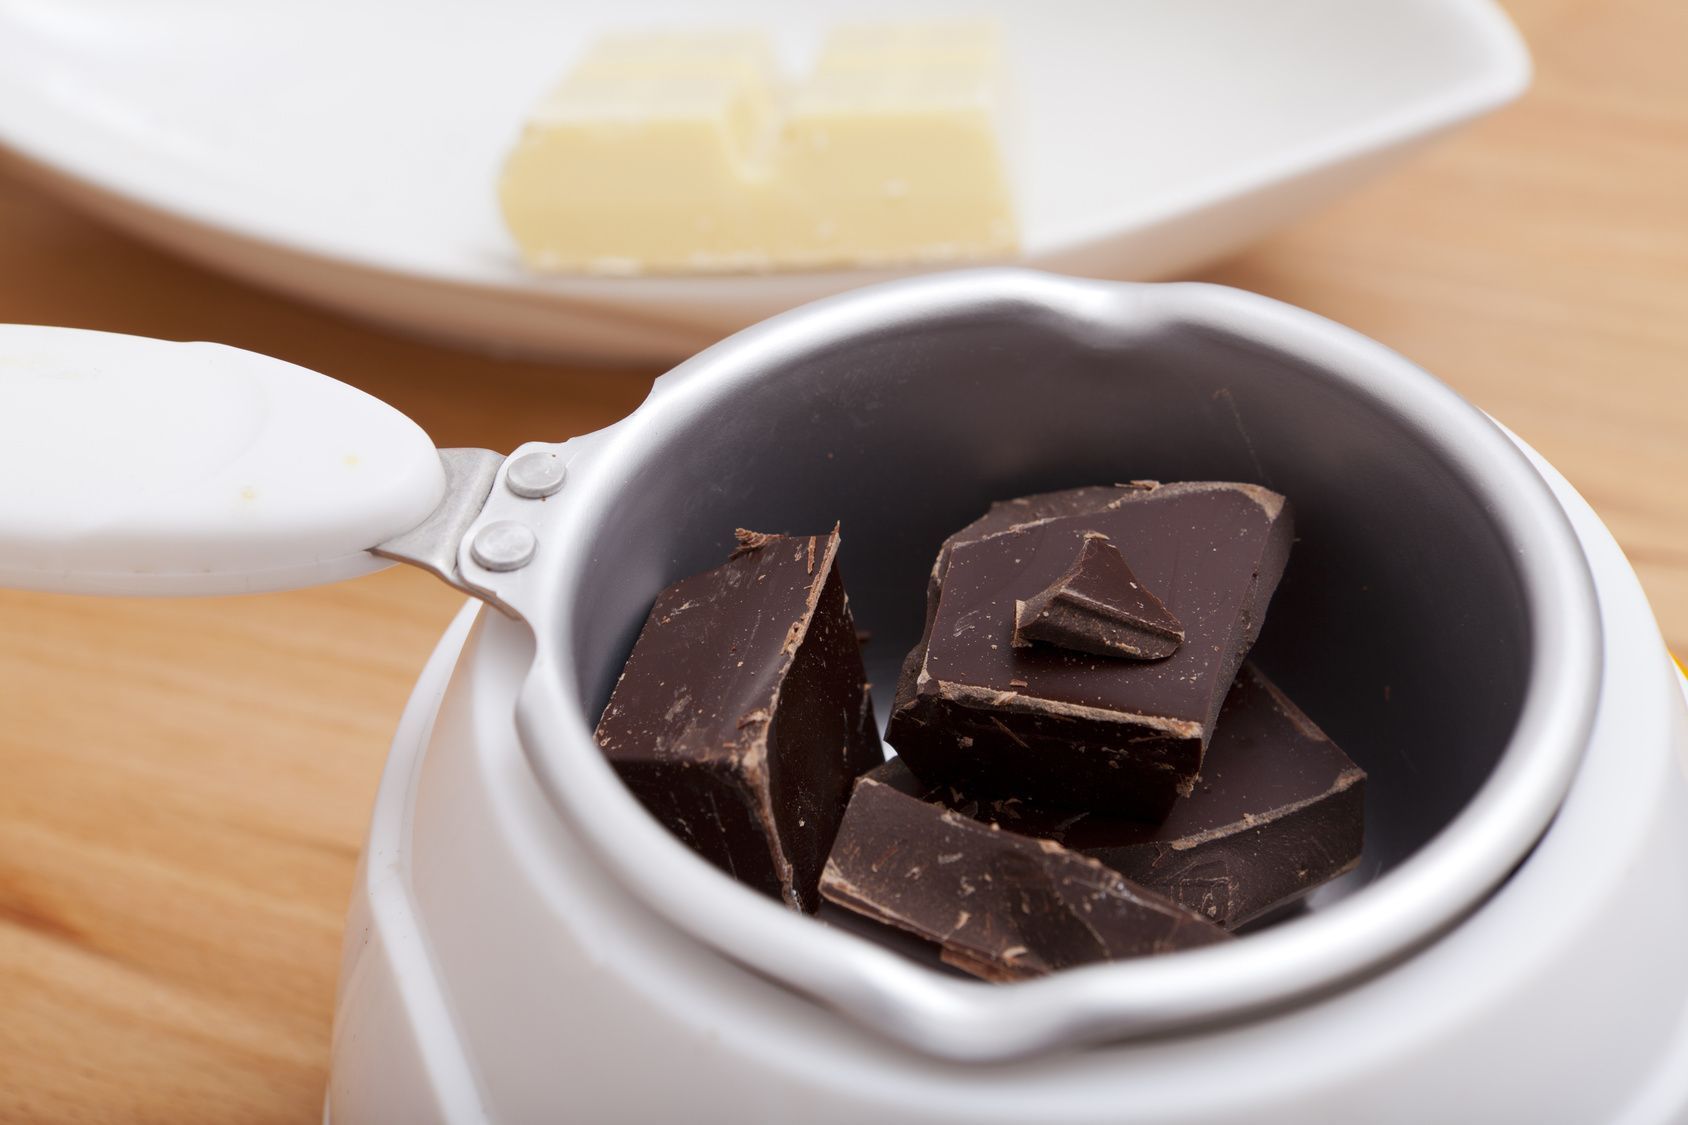 Spezielle Fondueschokolade ist teuer. Mit dem entsprechenden Rezept können Sie die Schokosoße aber auch selber machen.